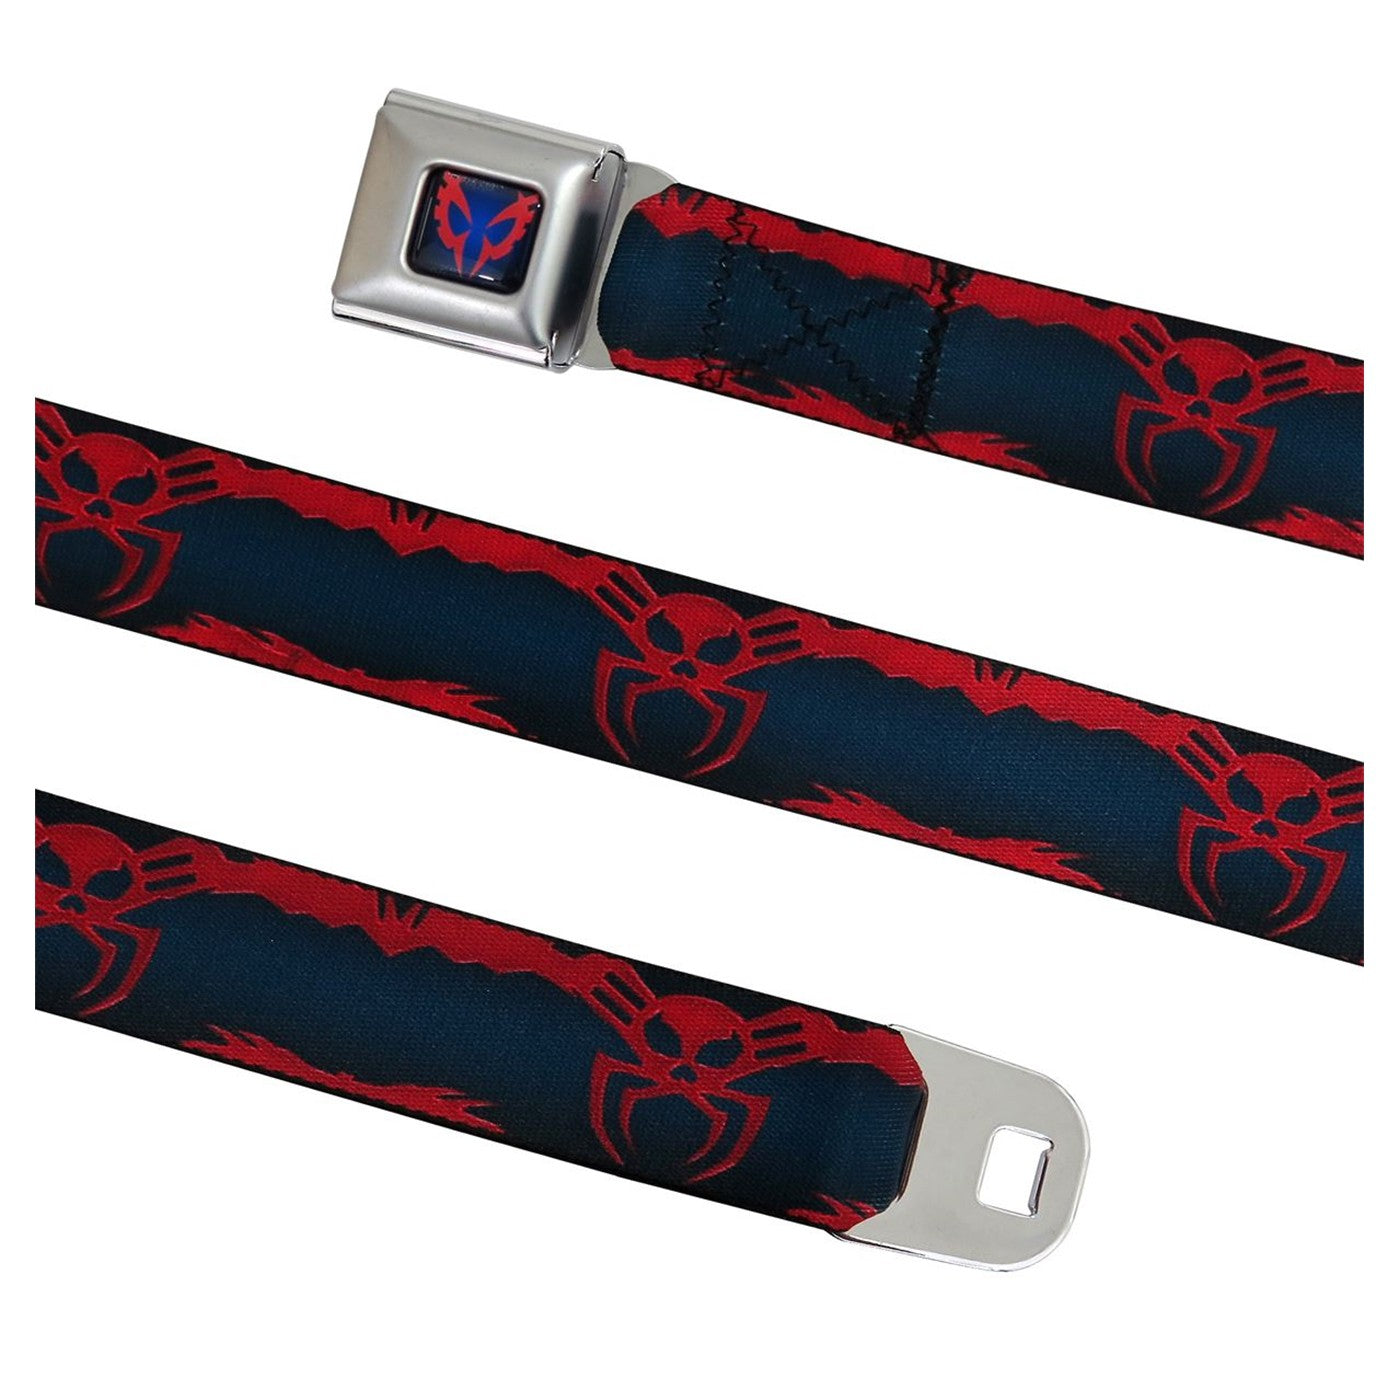 Spider-Man 2099 Seatbelt Belt